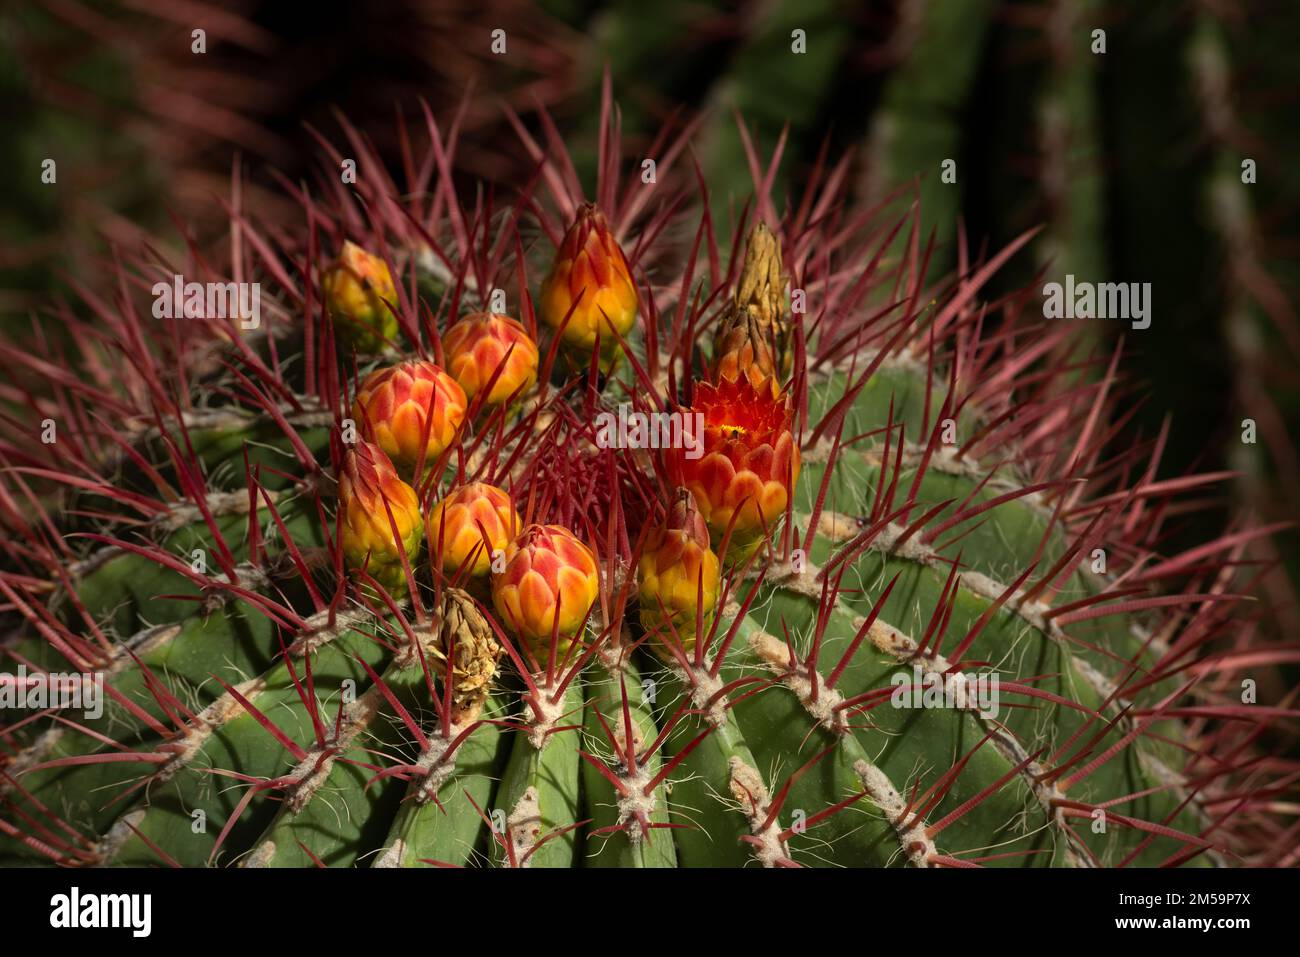 Cactus in a moroccan garden Stock Photo